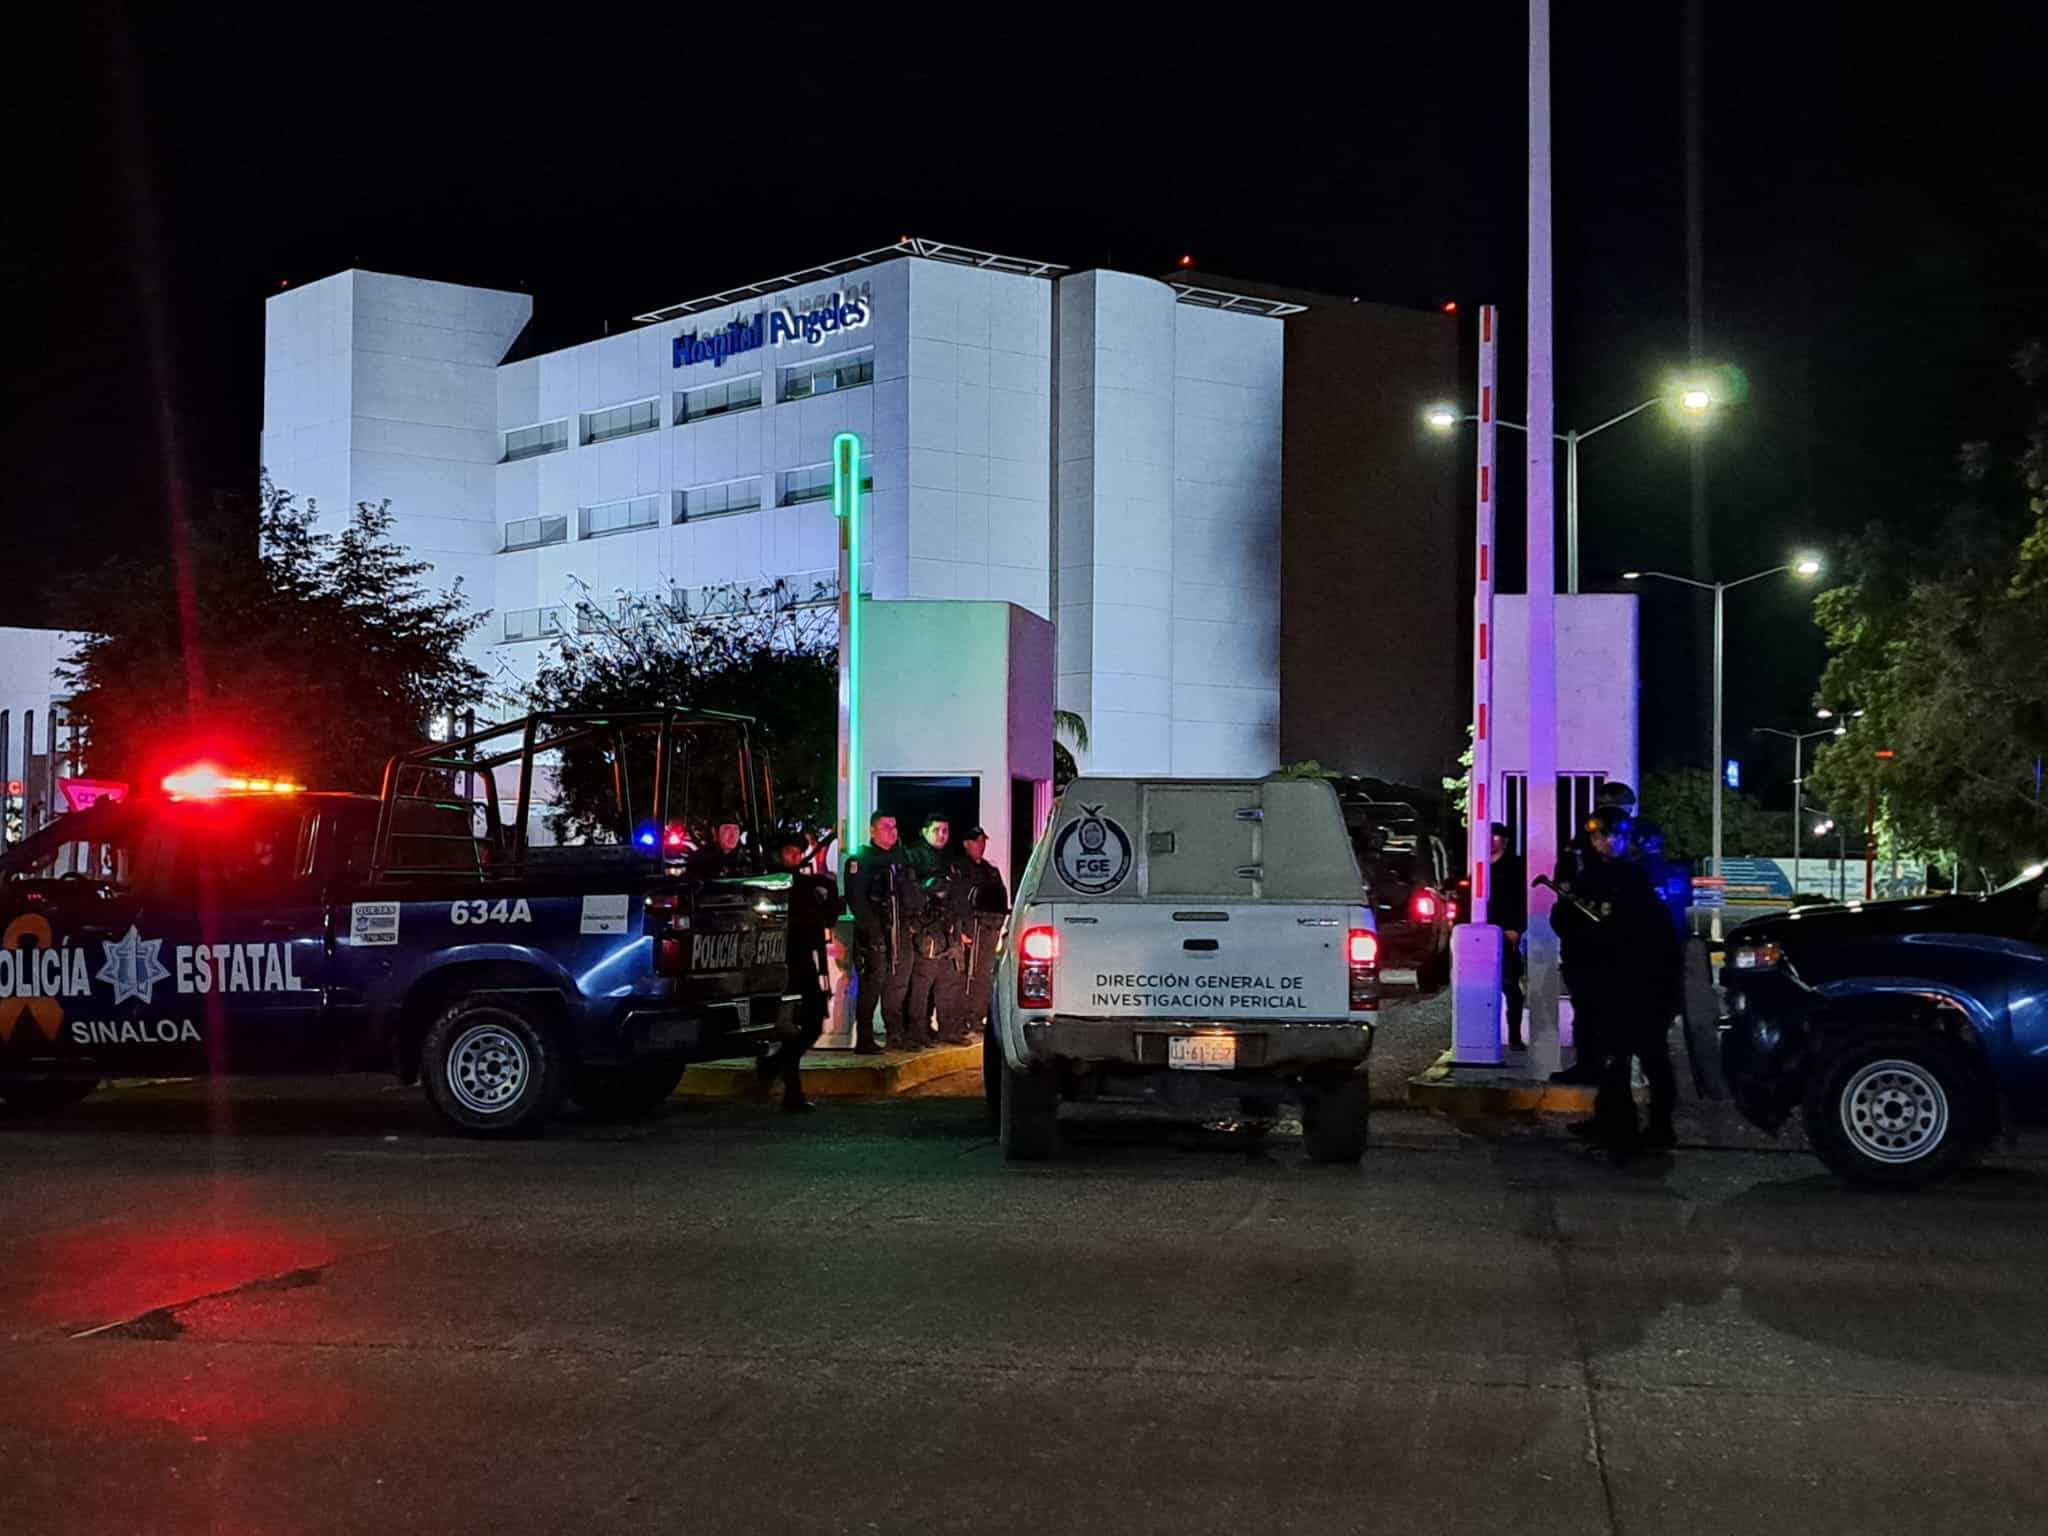 Elementos de la Policía Estatal resguardando el Hospital Ángeles de Culiacán y una camioneta de la FGE ingresando